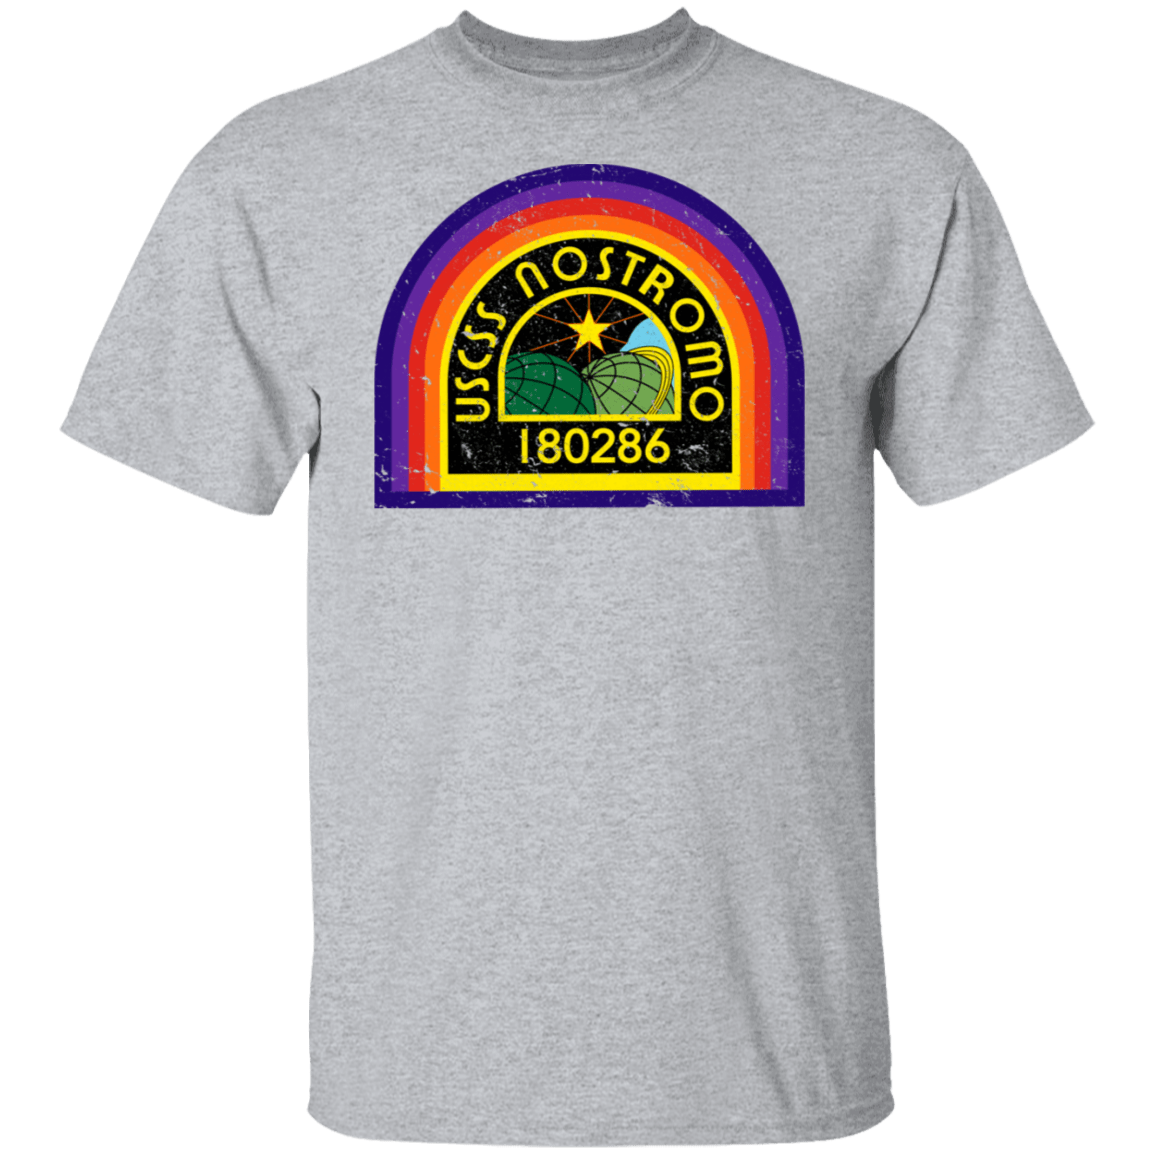 T-Shirts Sport Grey / S USCSS Nostromo T-Shirt